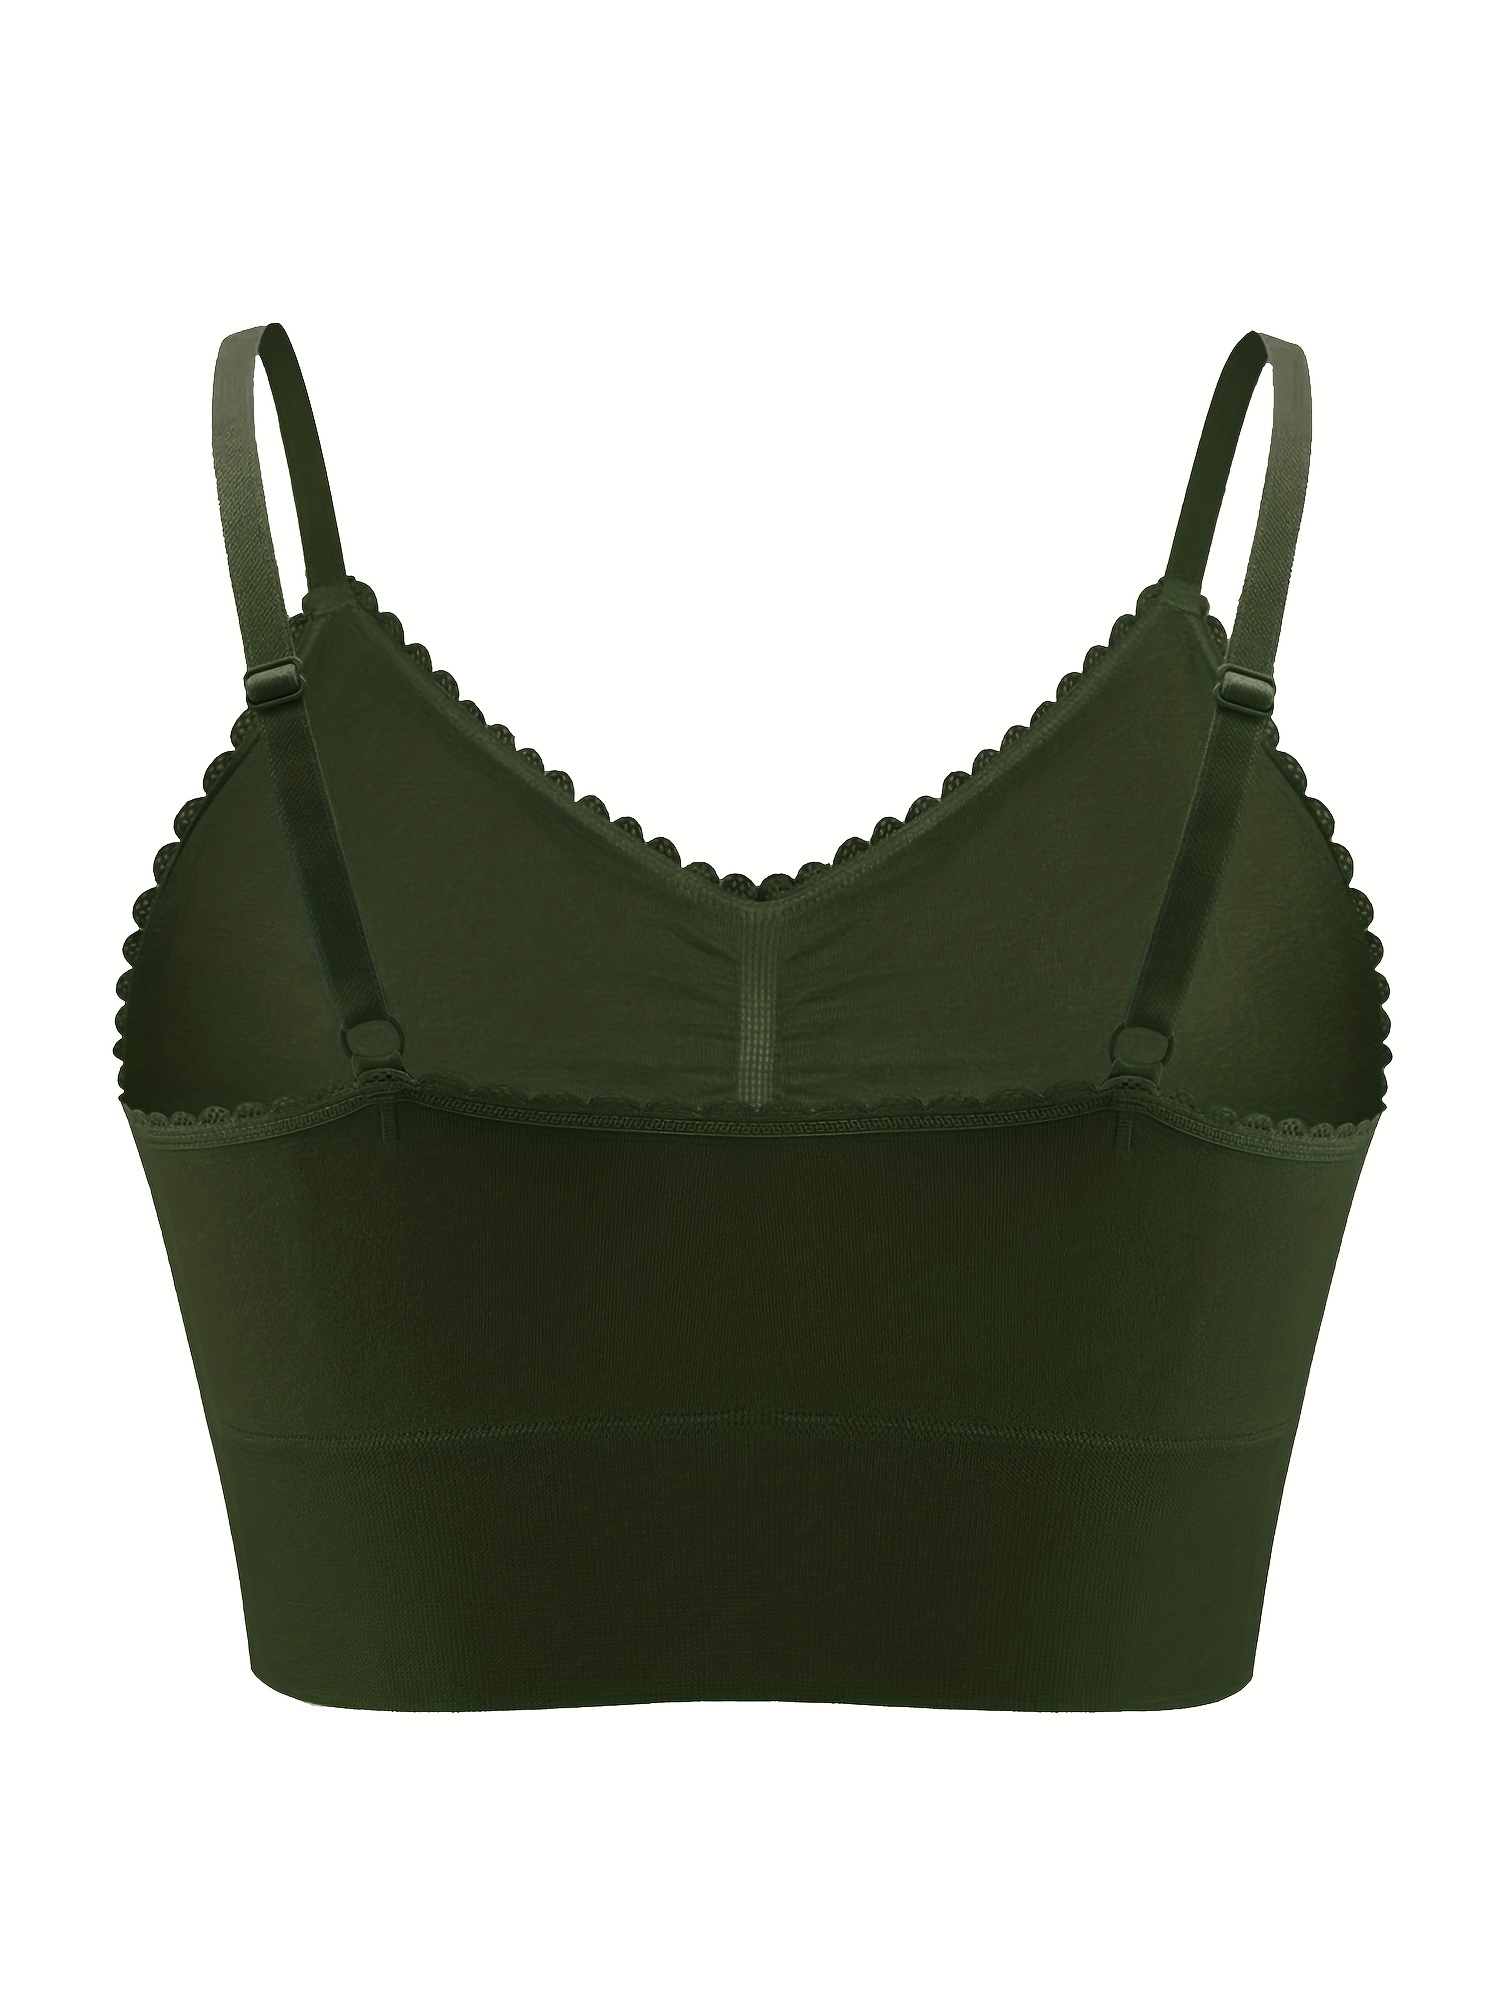 Eashery Plus Size Sports Bras for Women Women's Wireless Plus Size Bra Cotton  Support Comfort Unlined Sleep C 46 105 